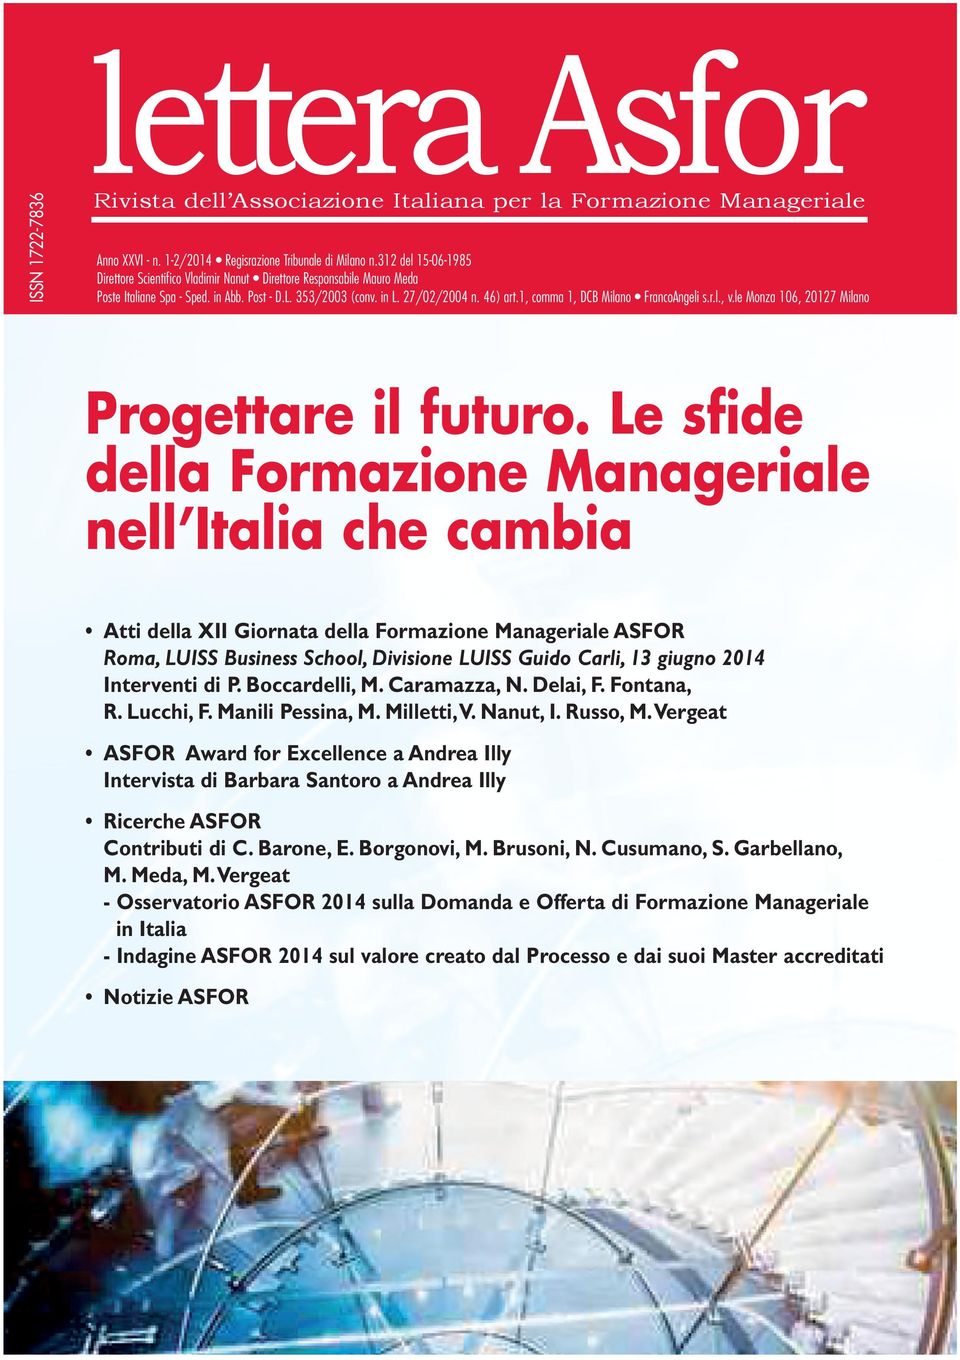 1, comma 1, DCB Milano FrancoAngeli s.r.l., v.le Monza 106, 20127 Milano Progettare il futuro.